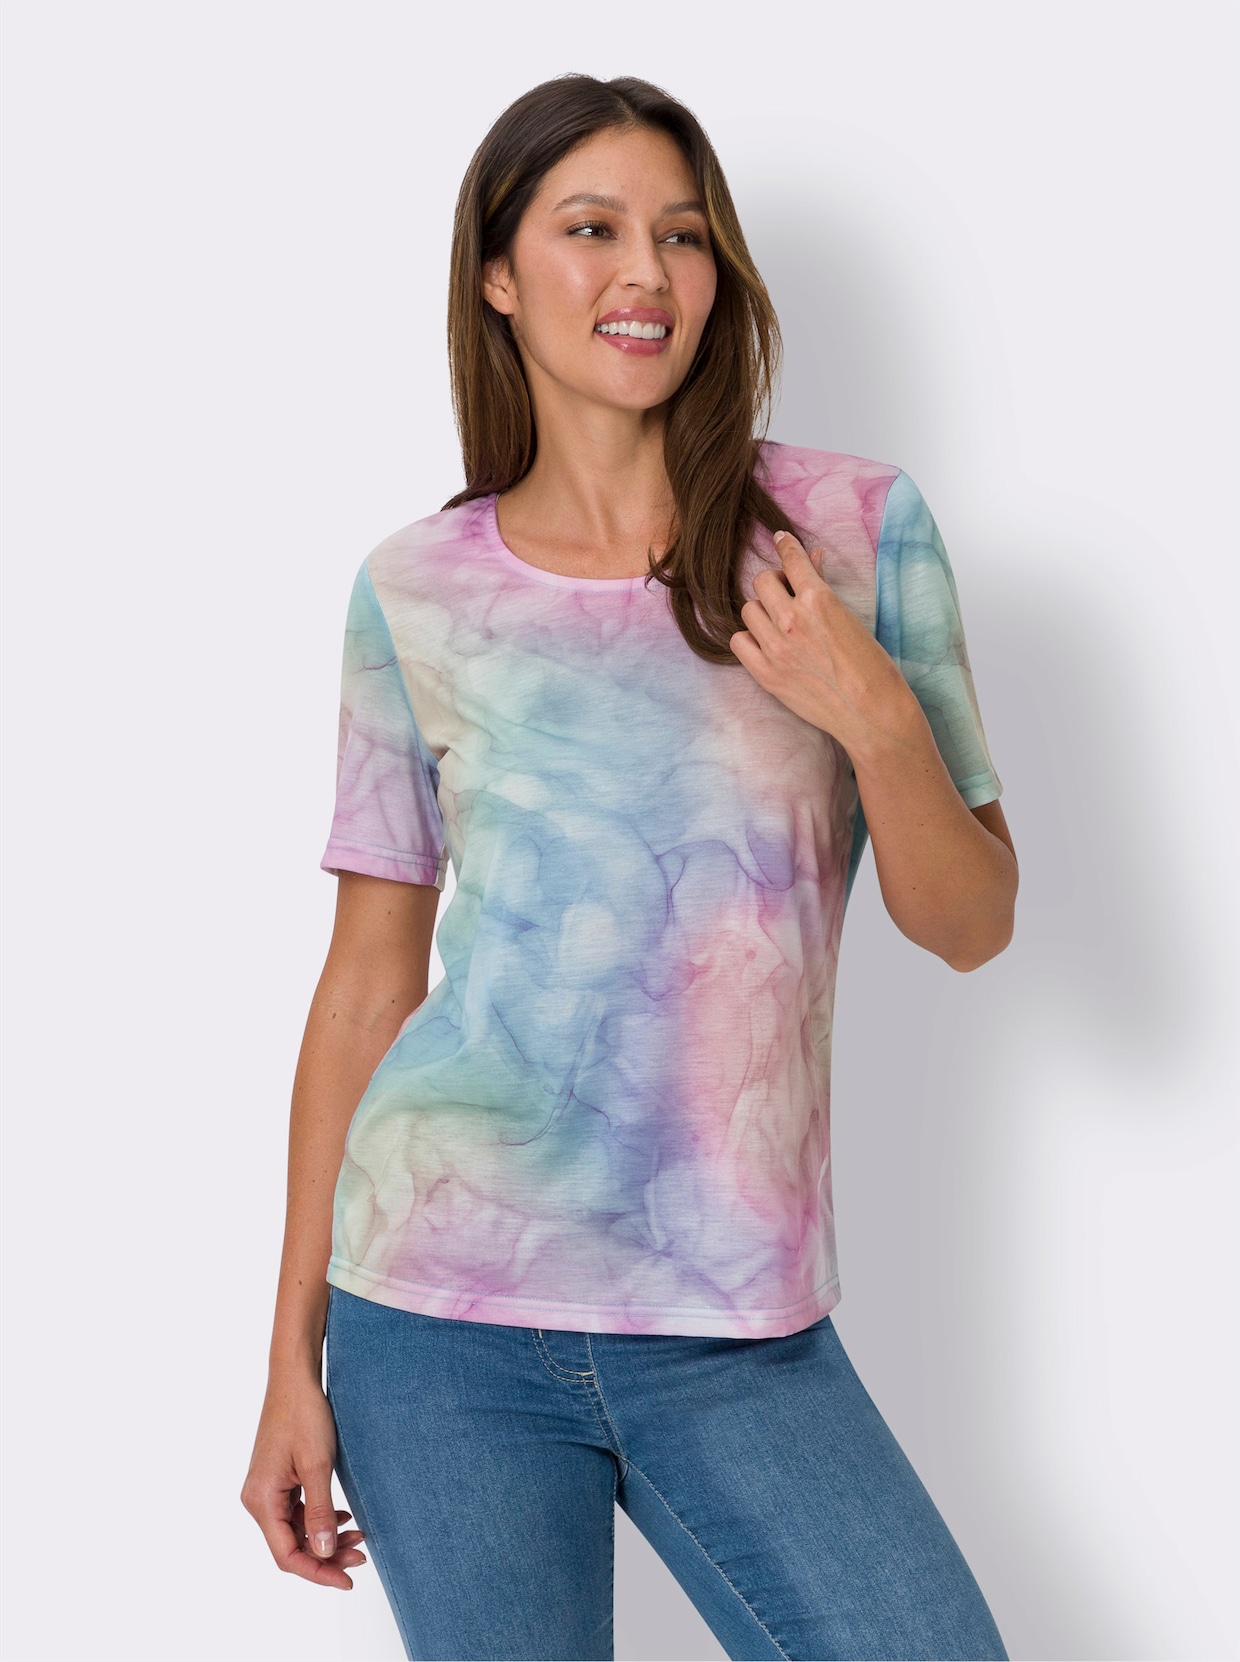 Tričko s krátkým rukávem - eukalyptová-fialová-potisk